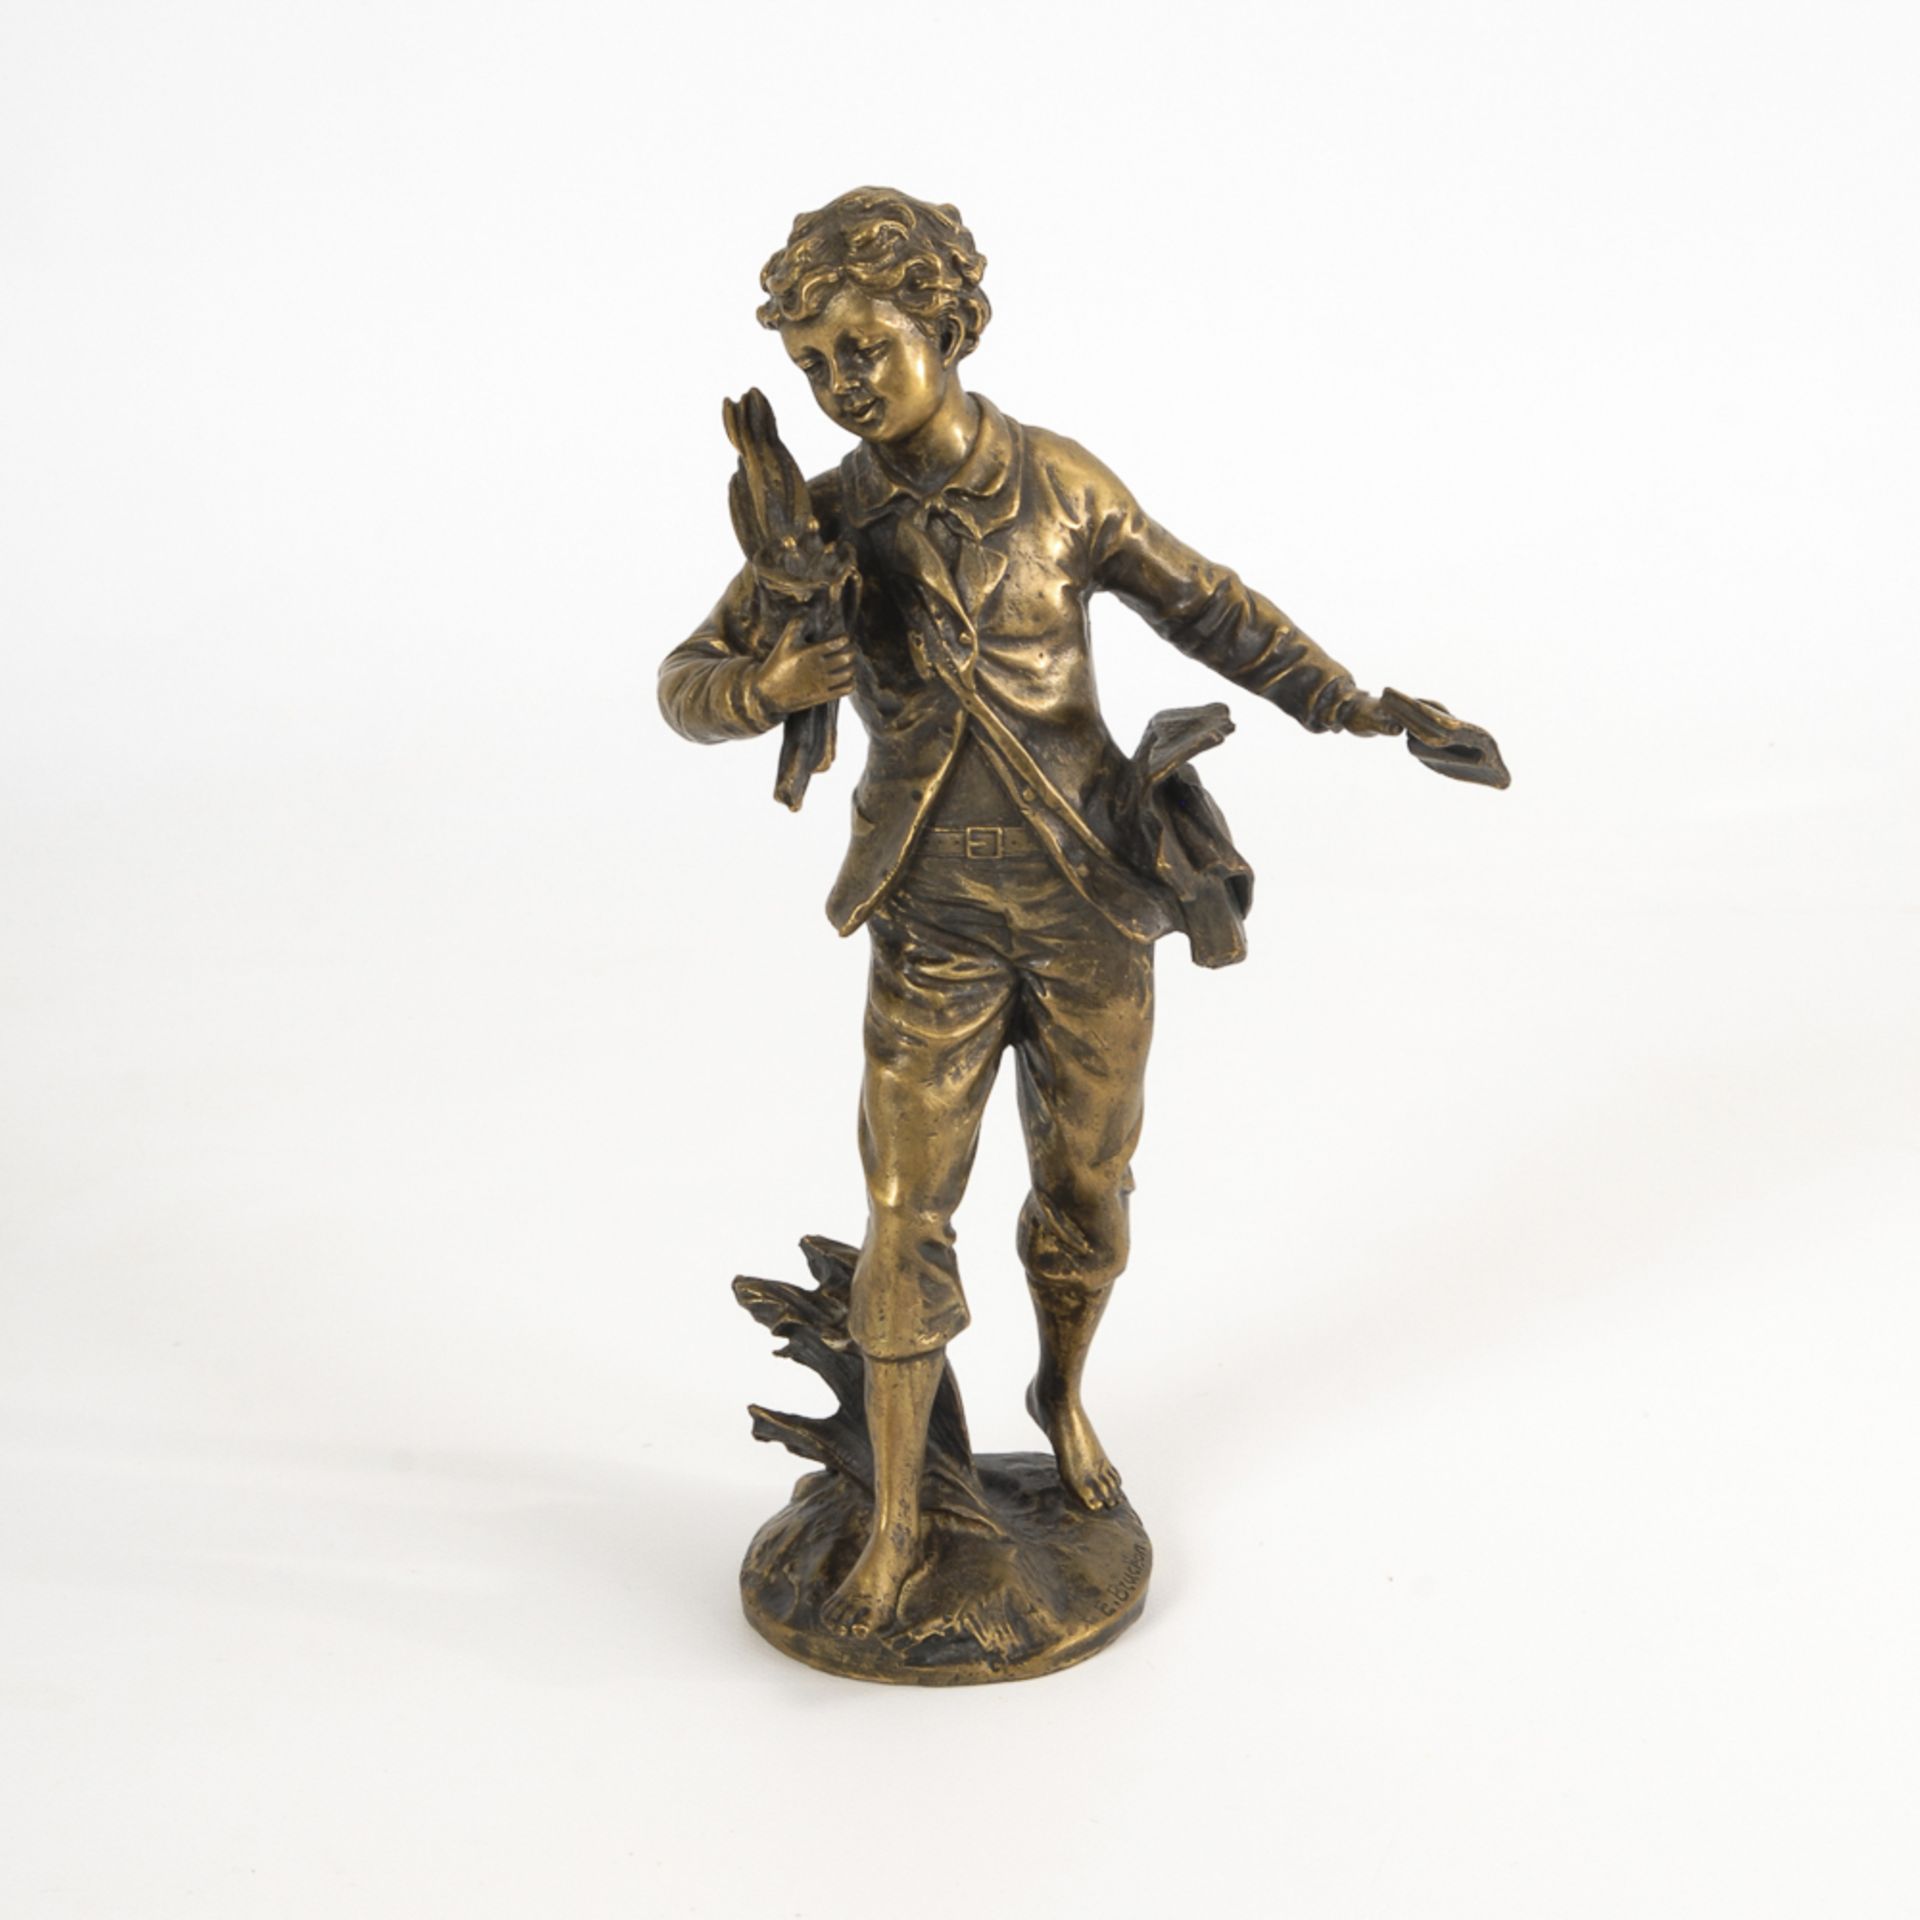 BRUCHON, Émil: Knabenplastik.Bronze patiniert, bezeichnet, Gießermarke "J.B. Deposee, Bronze